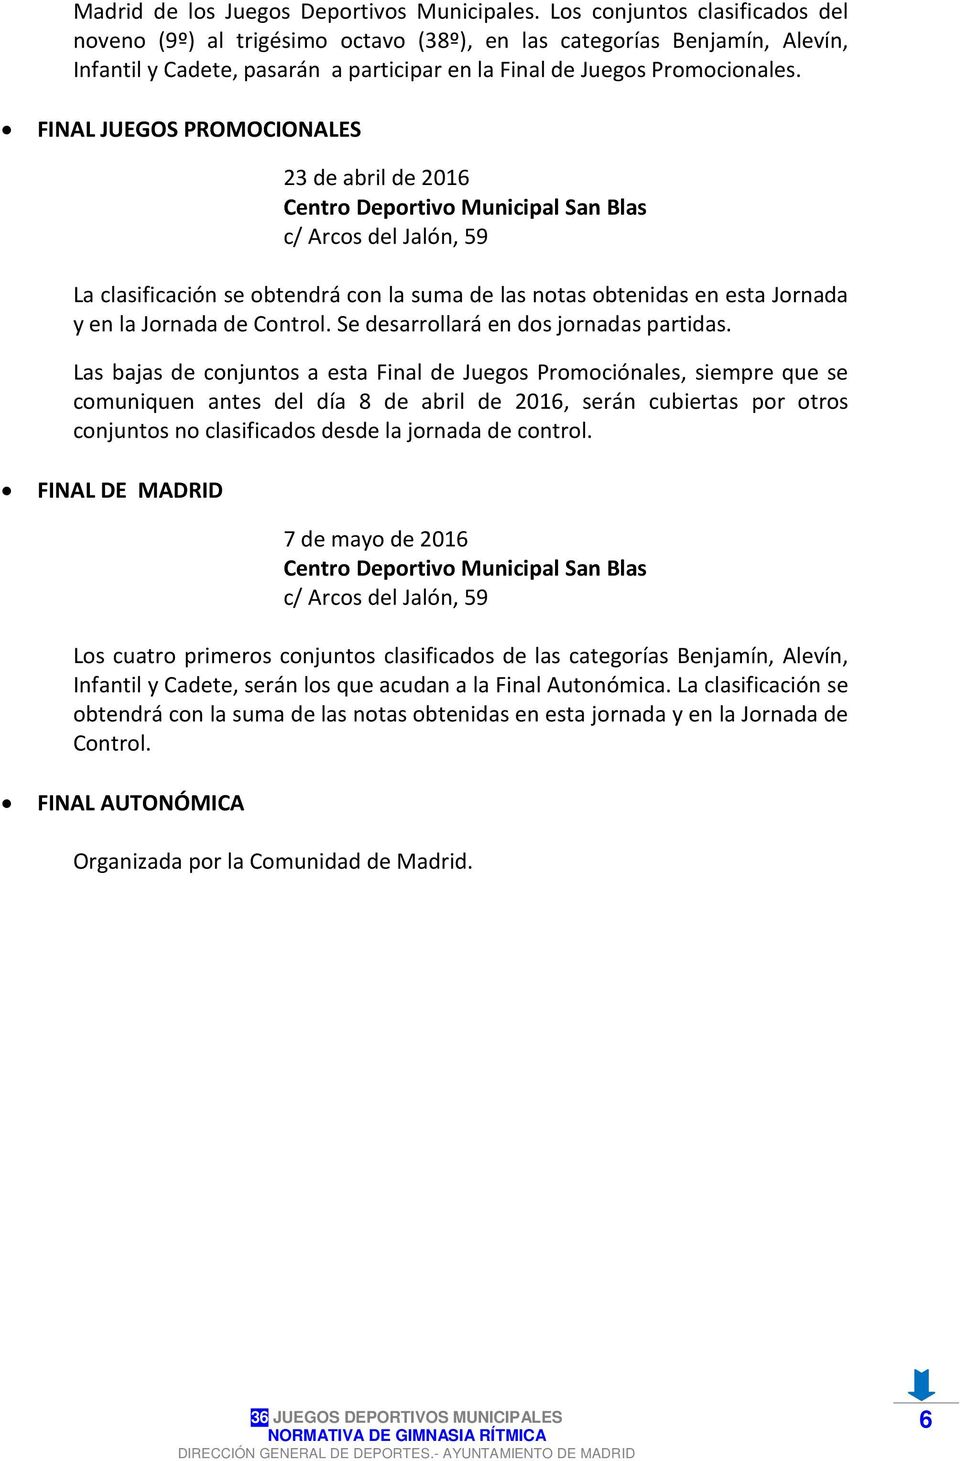 FINAL JUEGOS PROMOCIONALES 23 de abril de 2016 Centro Deportivo Municipal San Blas c/ Arcos del Jalón, 59 La clasificación se obtendrá con la suma de las notas obtenidas en esta Jornada y en la